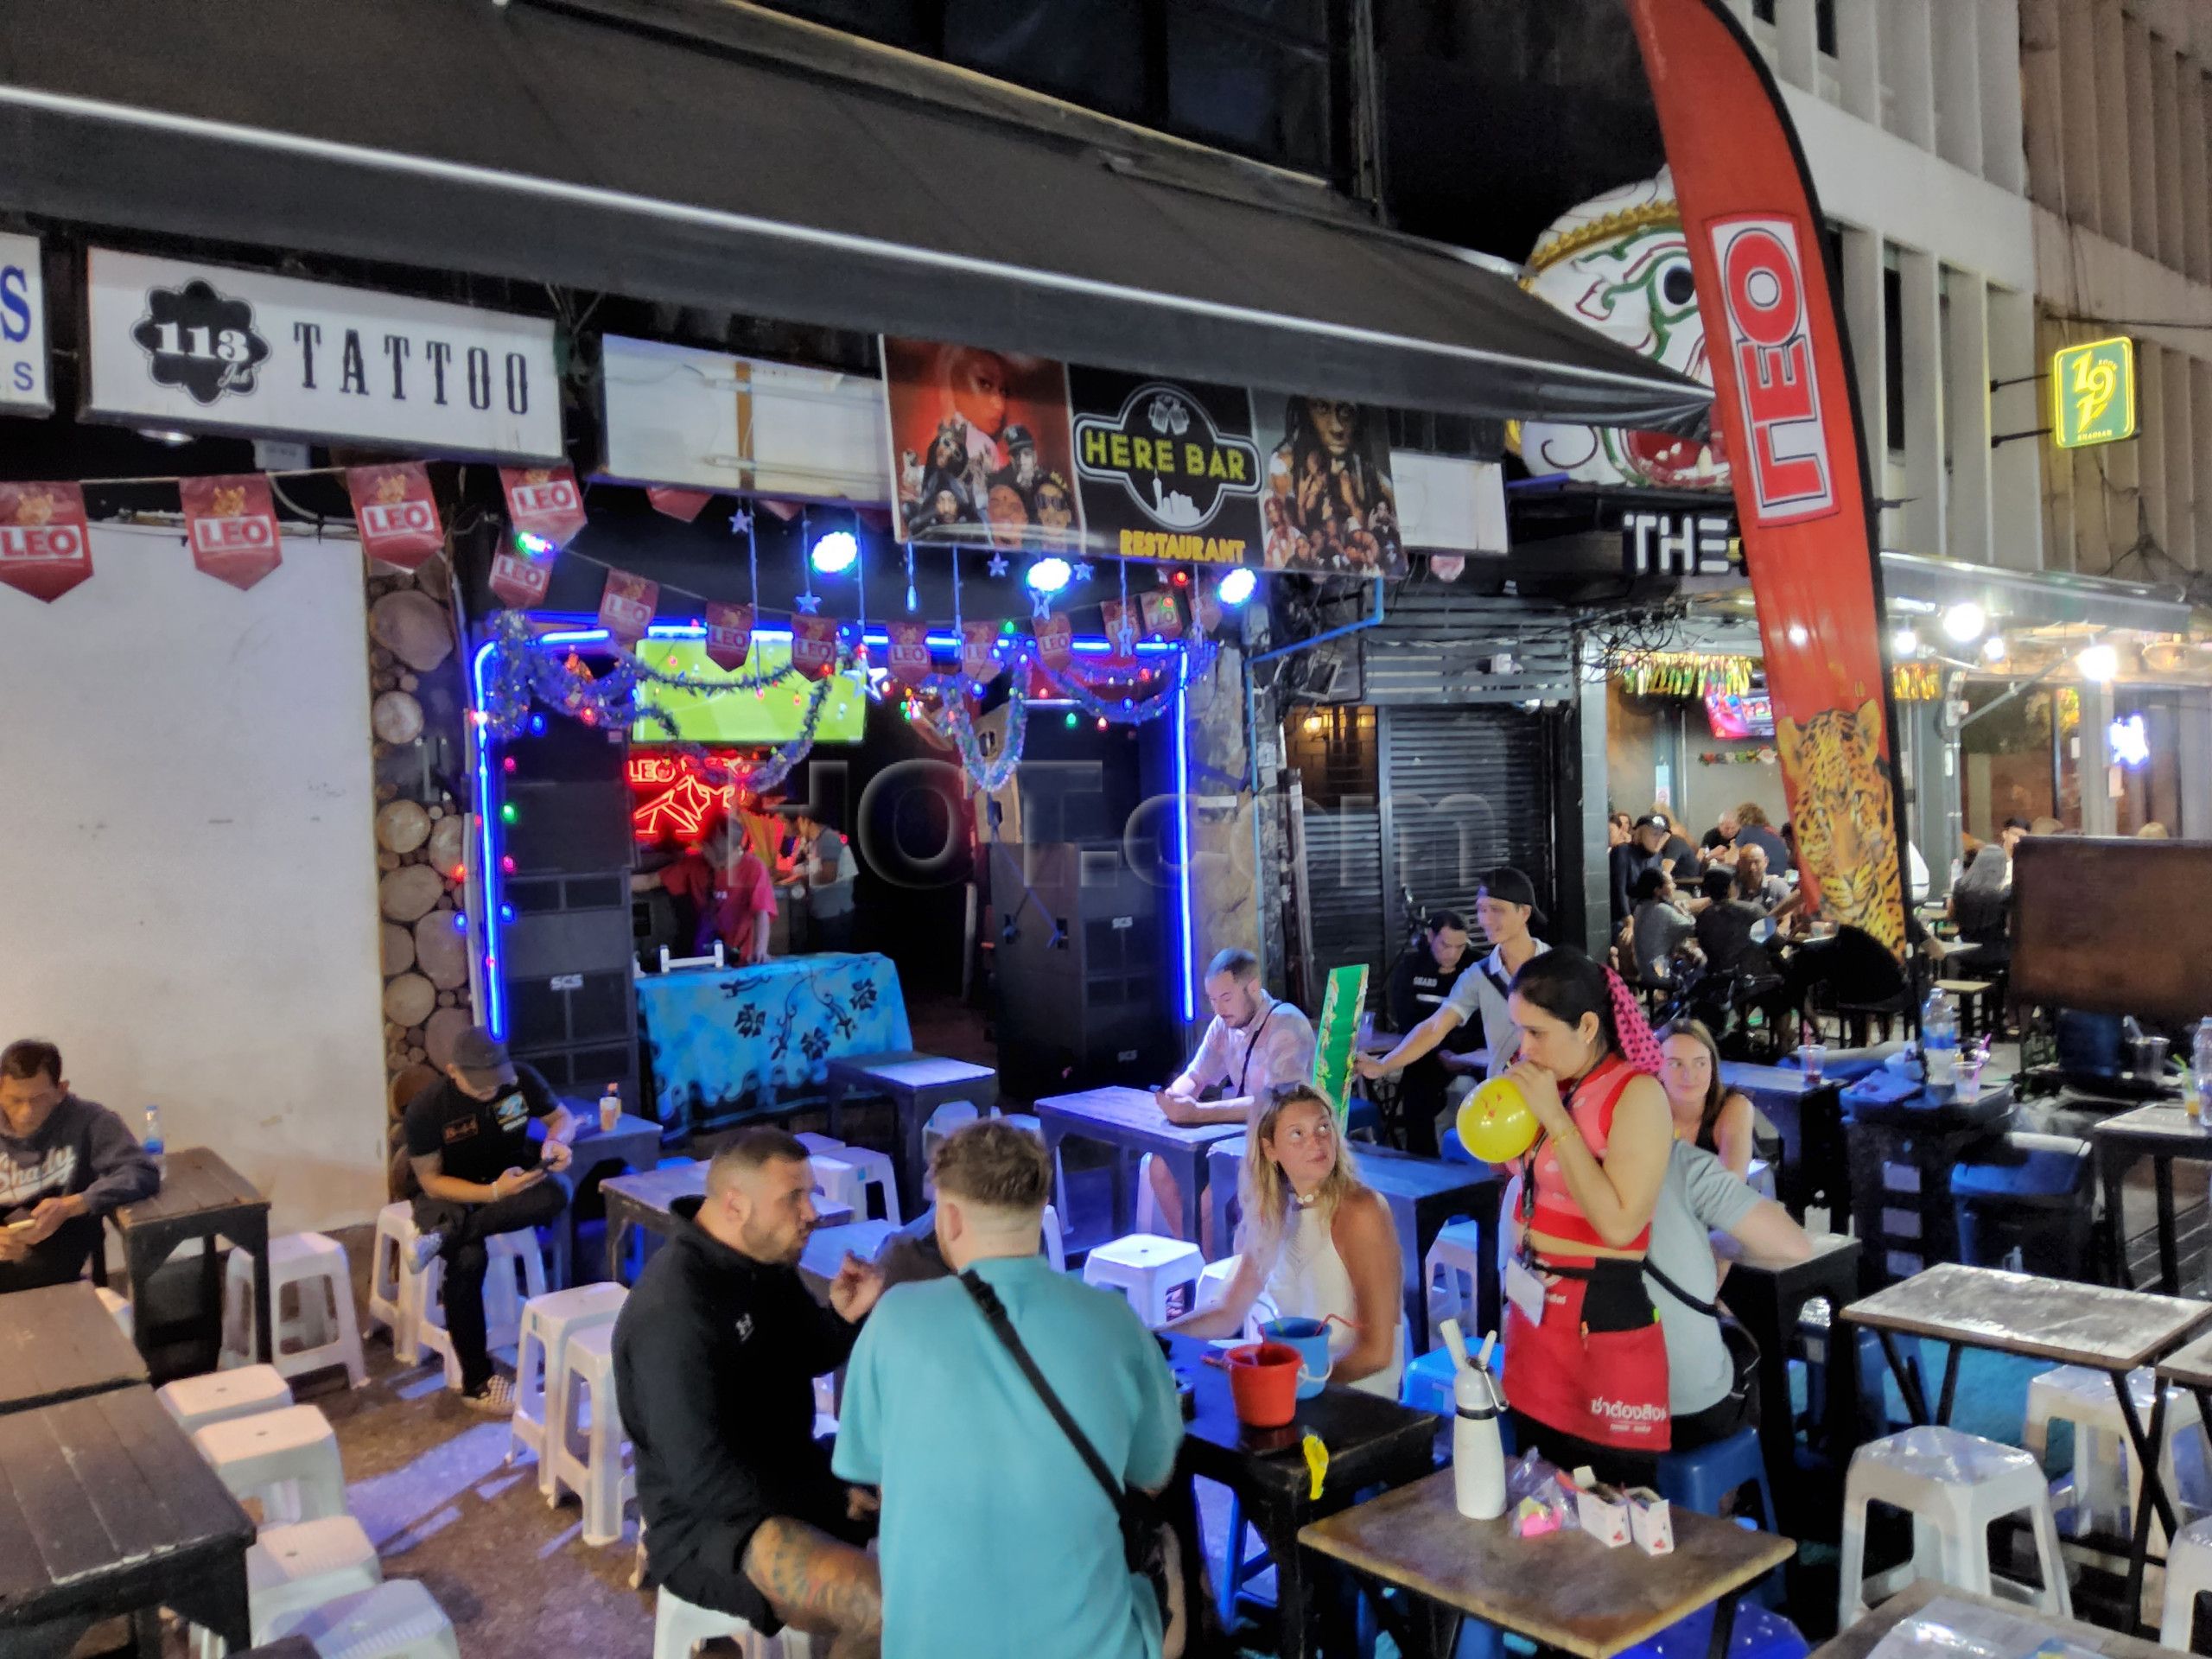 Bangkok, Thailand Here Bar